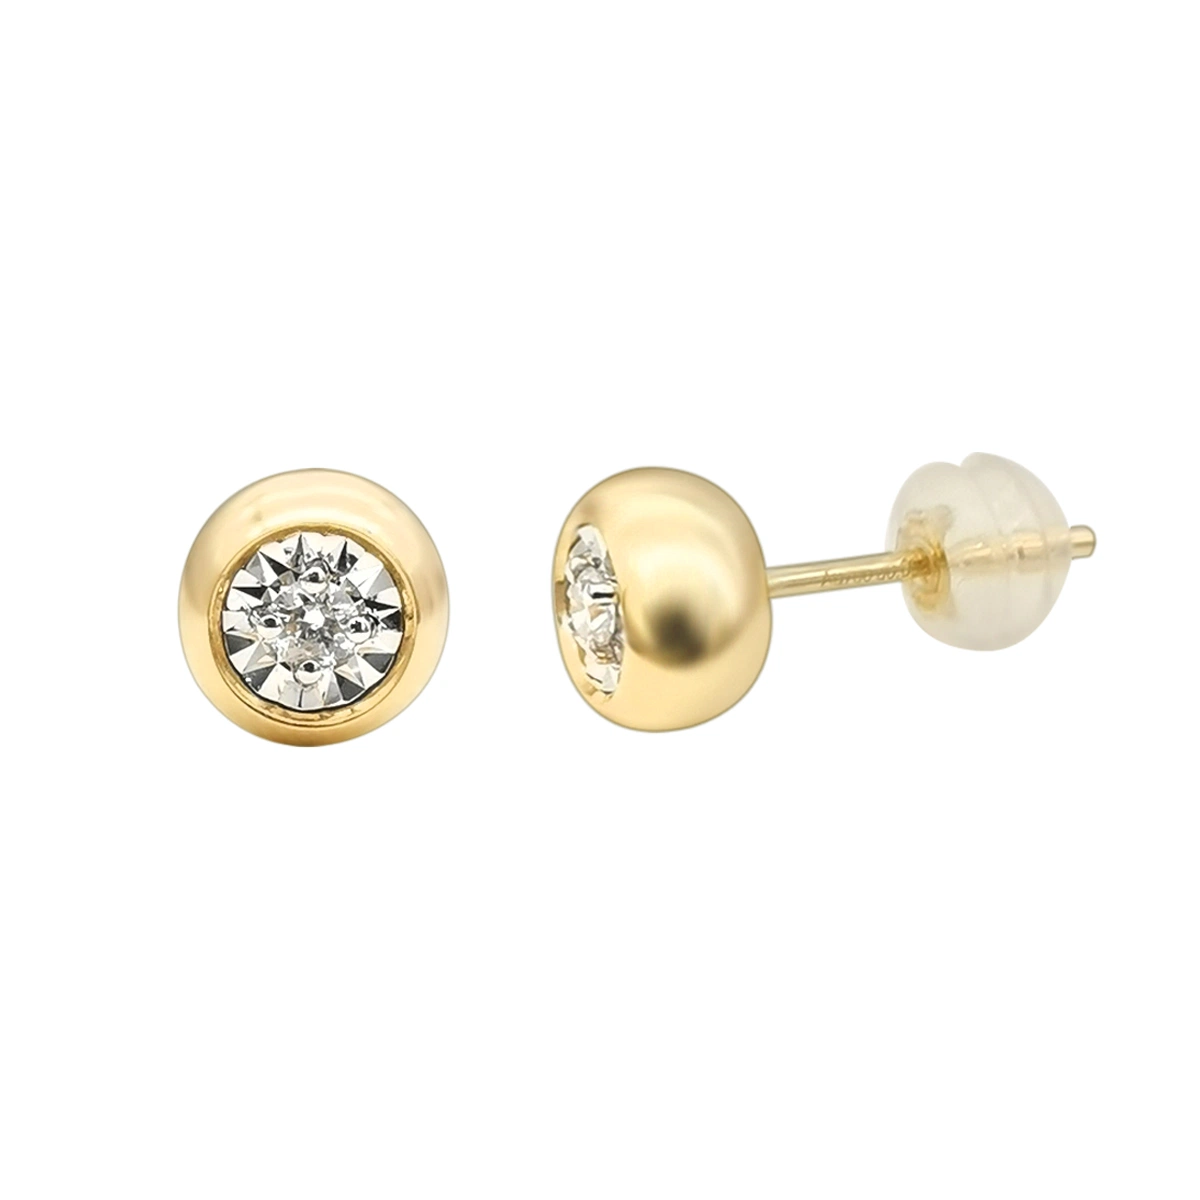 Lab Diamond Women Charm Earrings Jewelry White Gold Fashion Stud Earrings